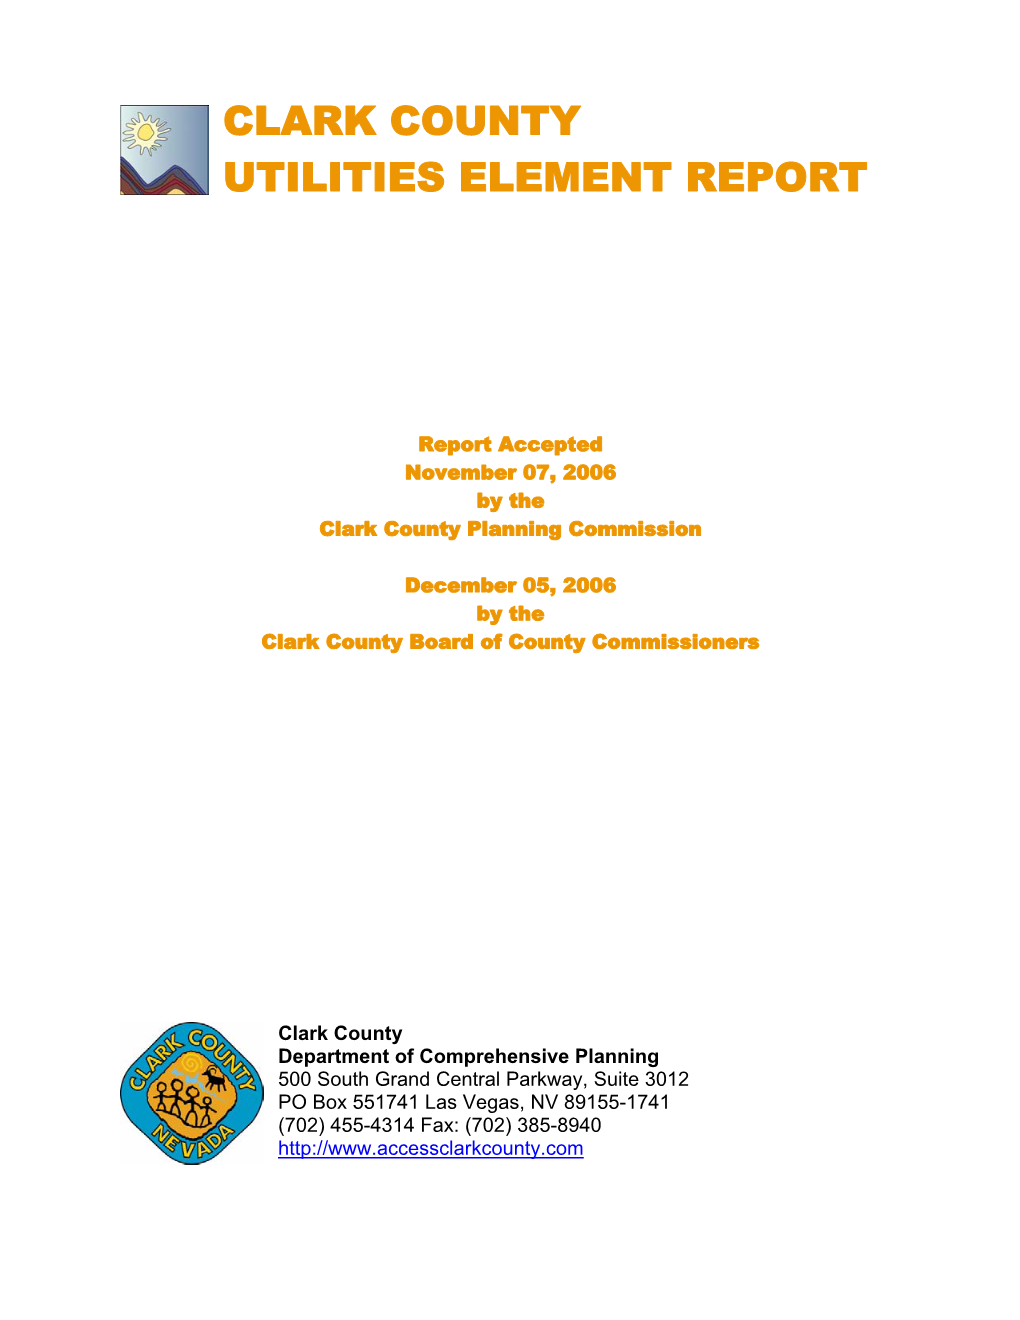 Clark County Utilities Element Report